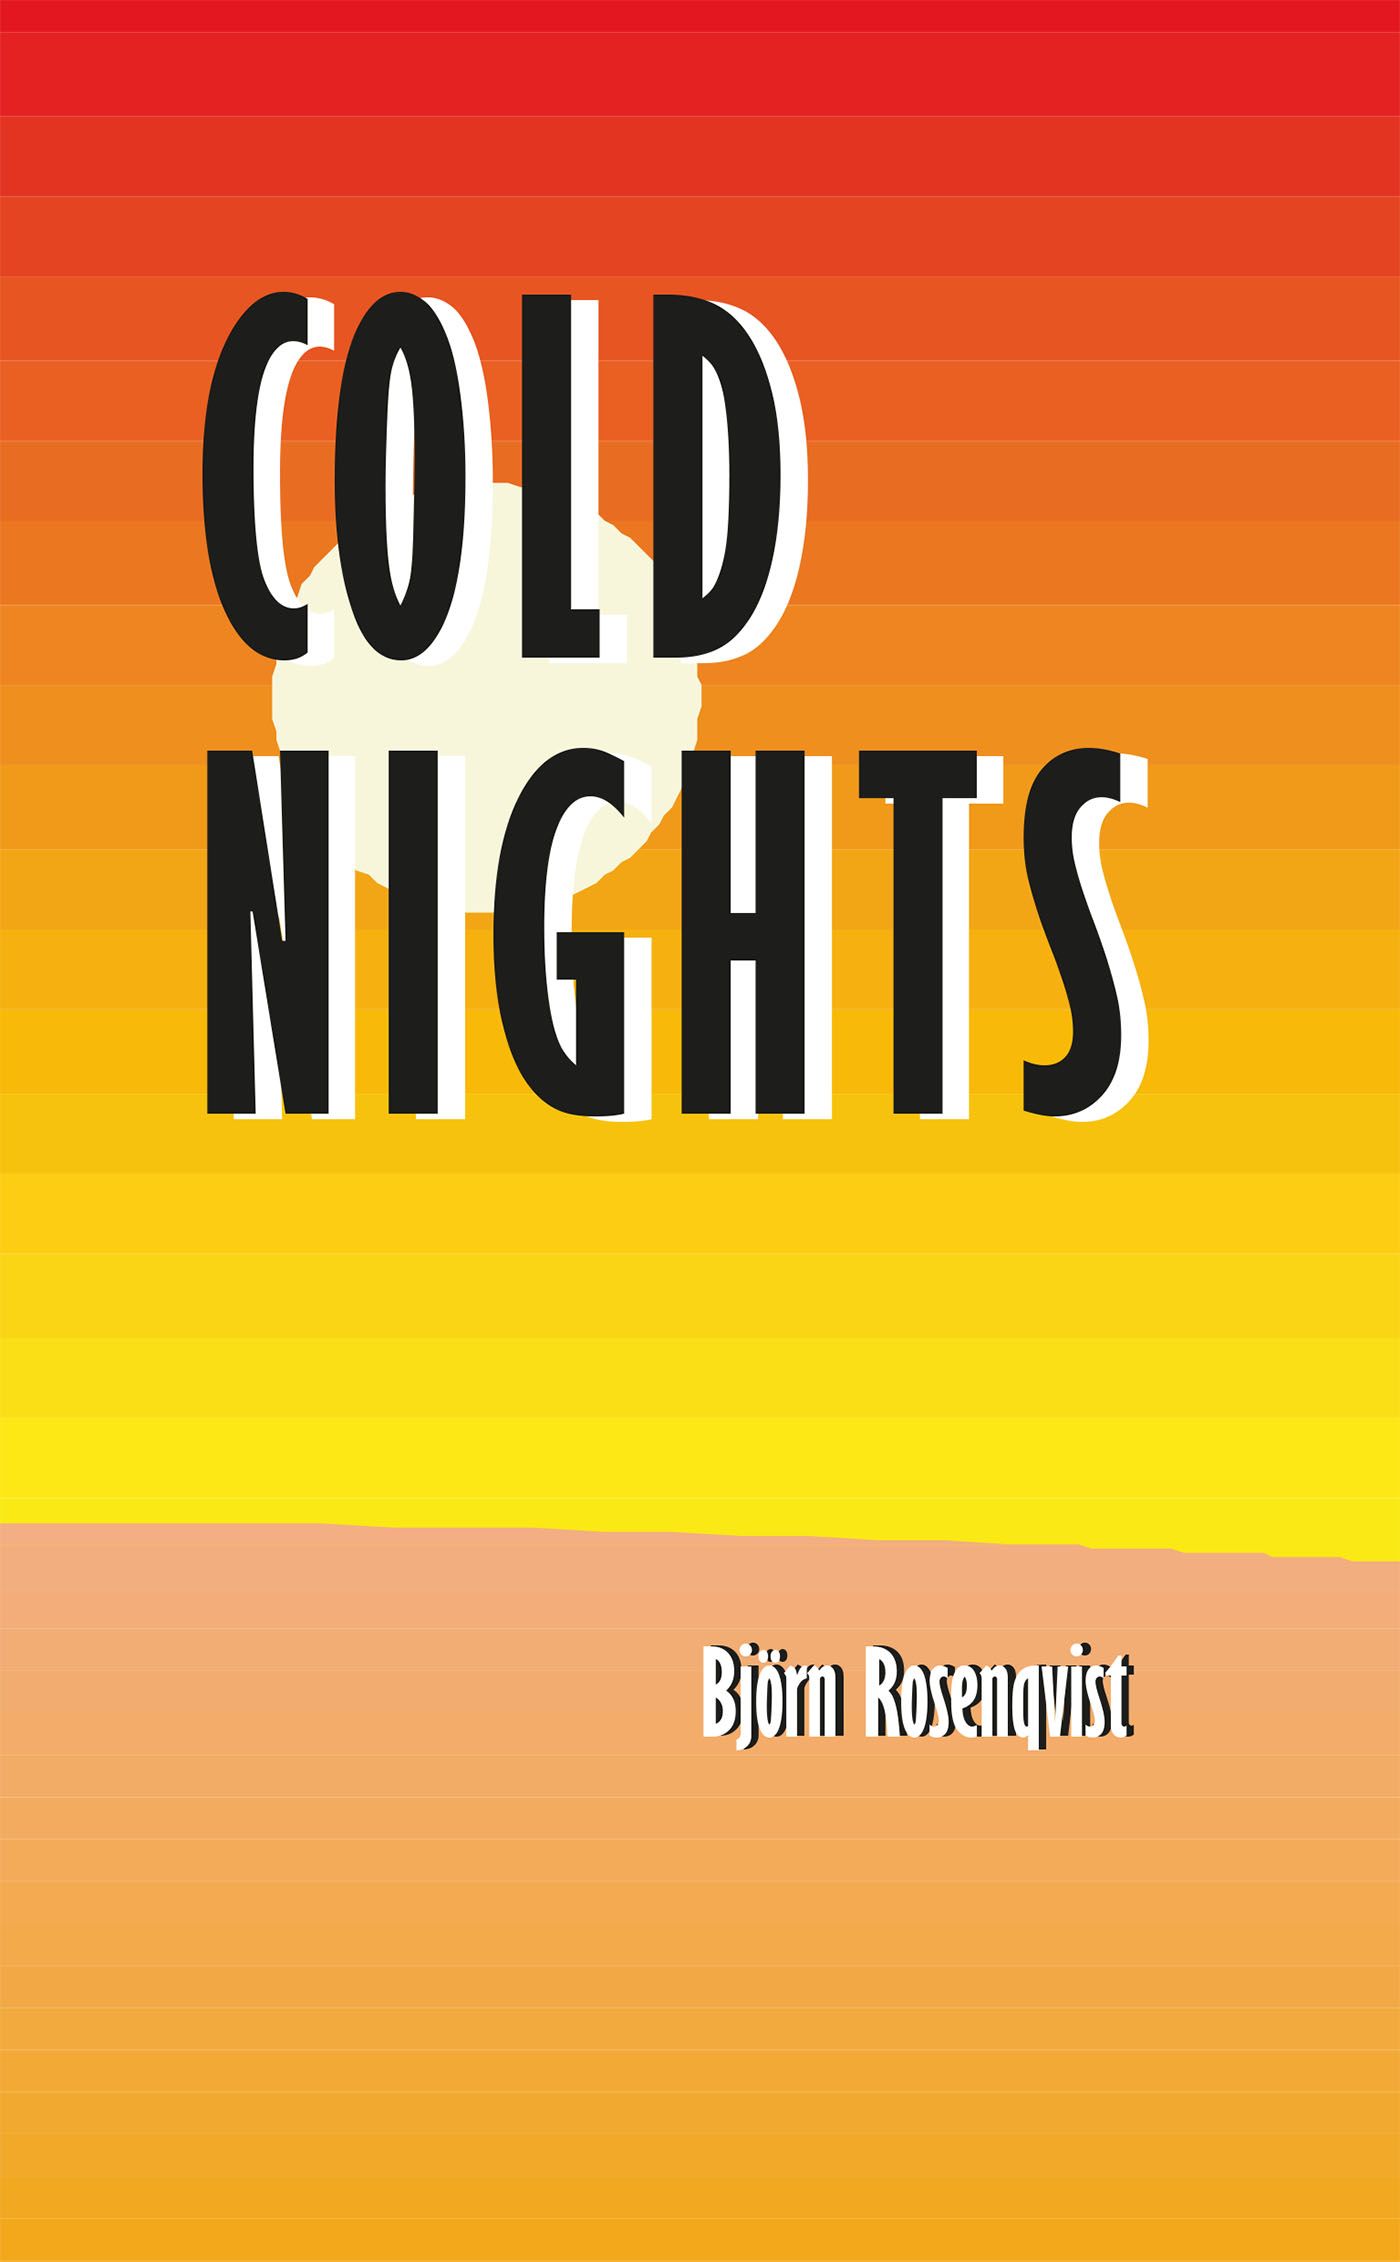 Cold nights, e-bog af Björn Rosenqvist